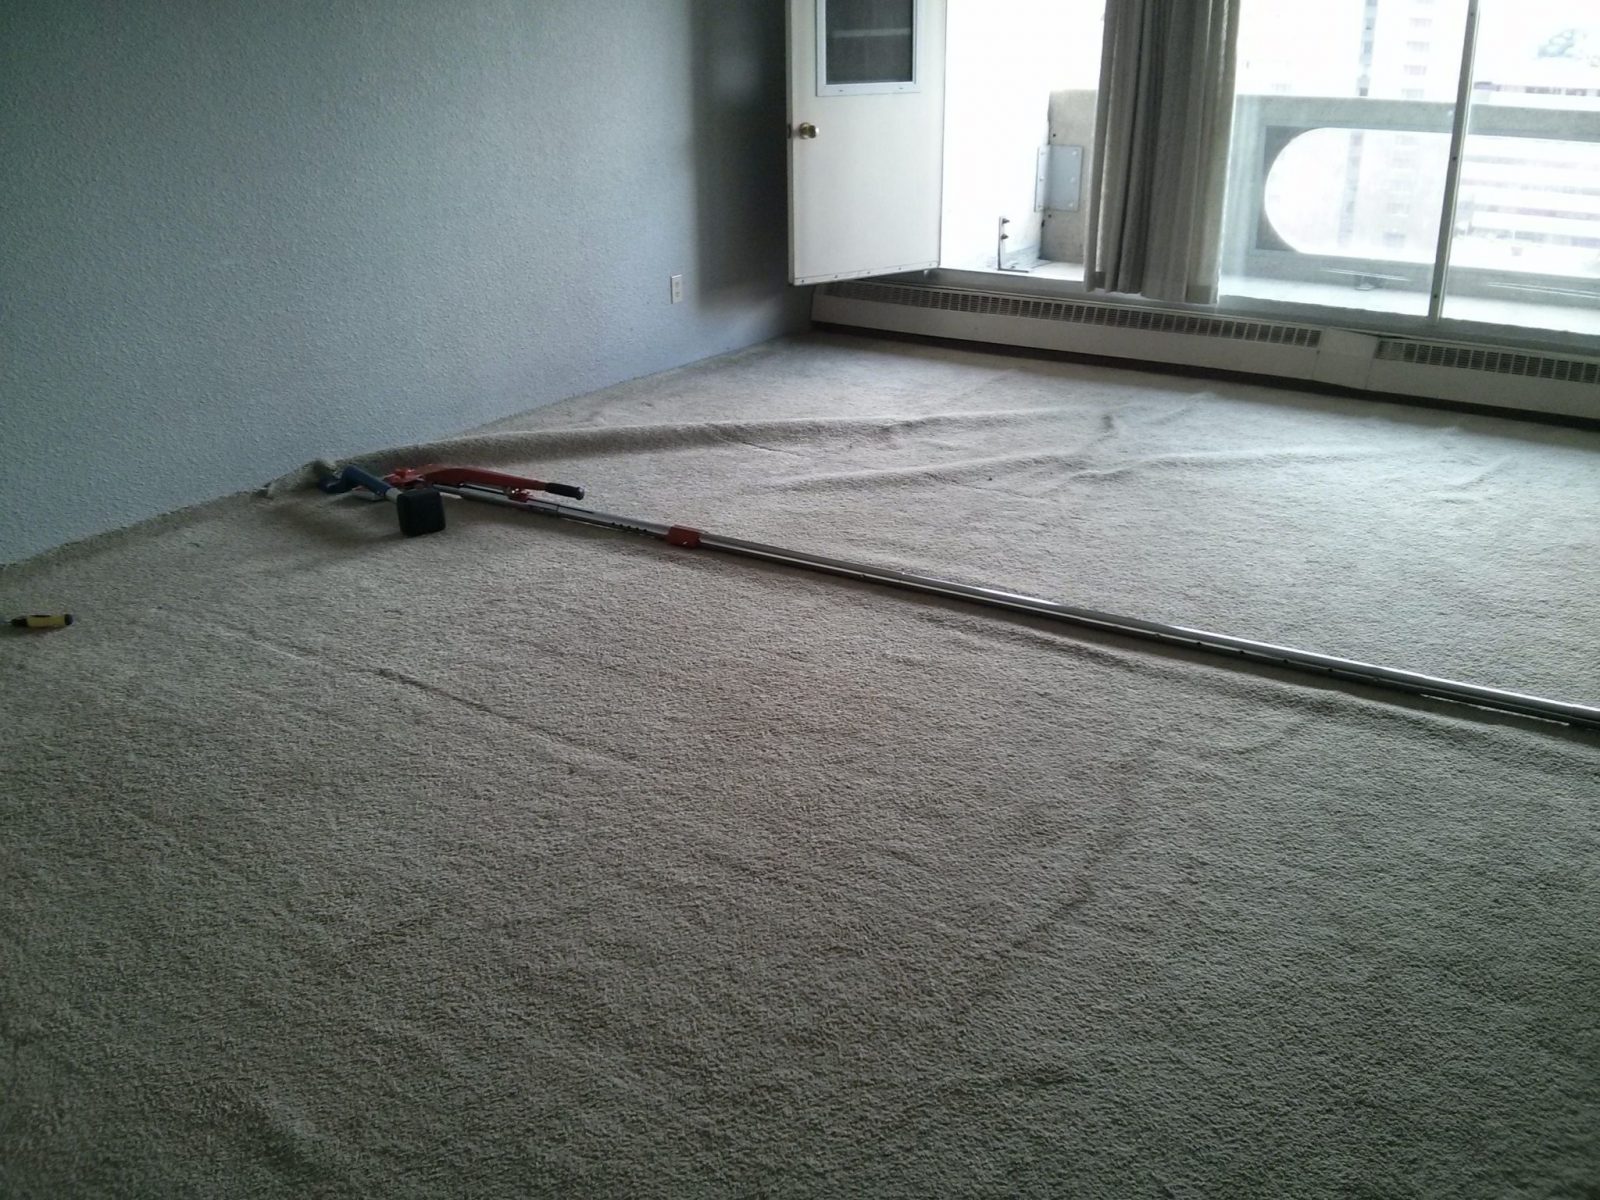 carpet stretch in a condo